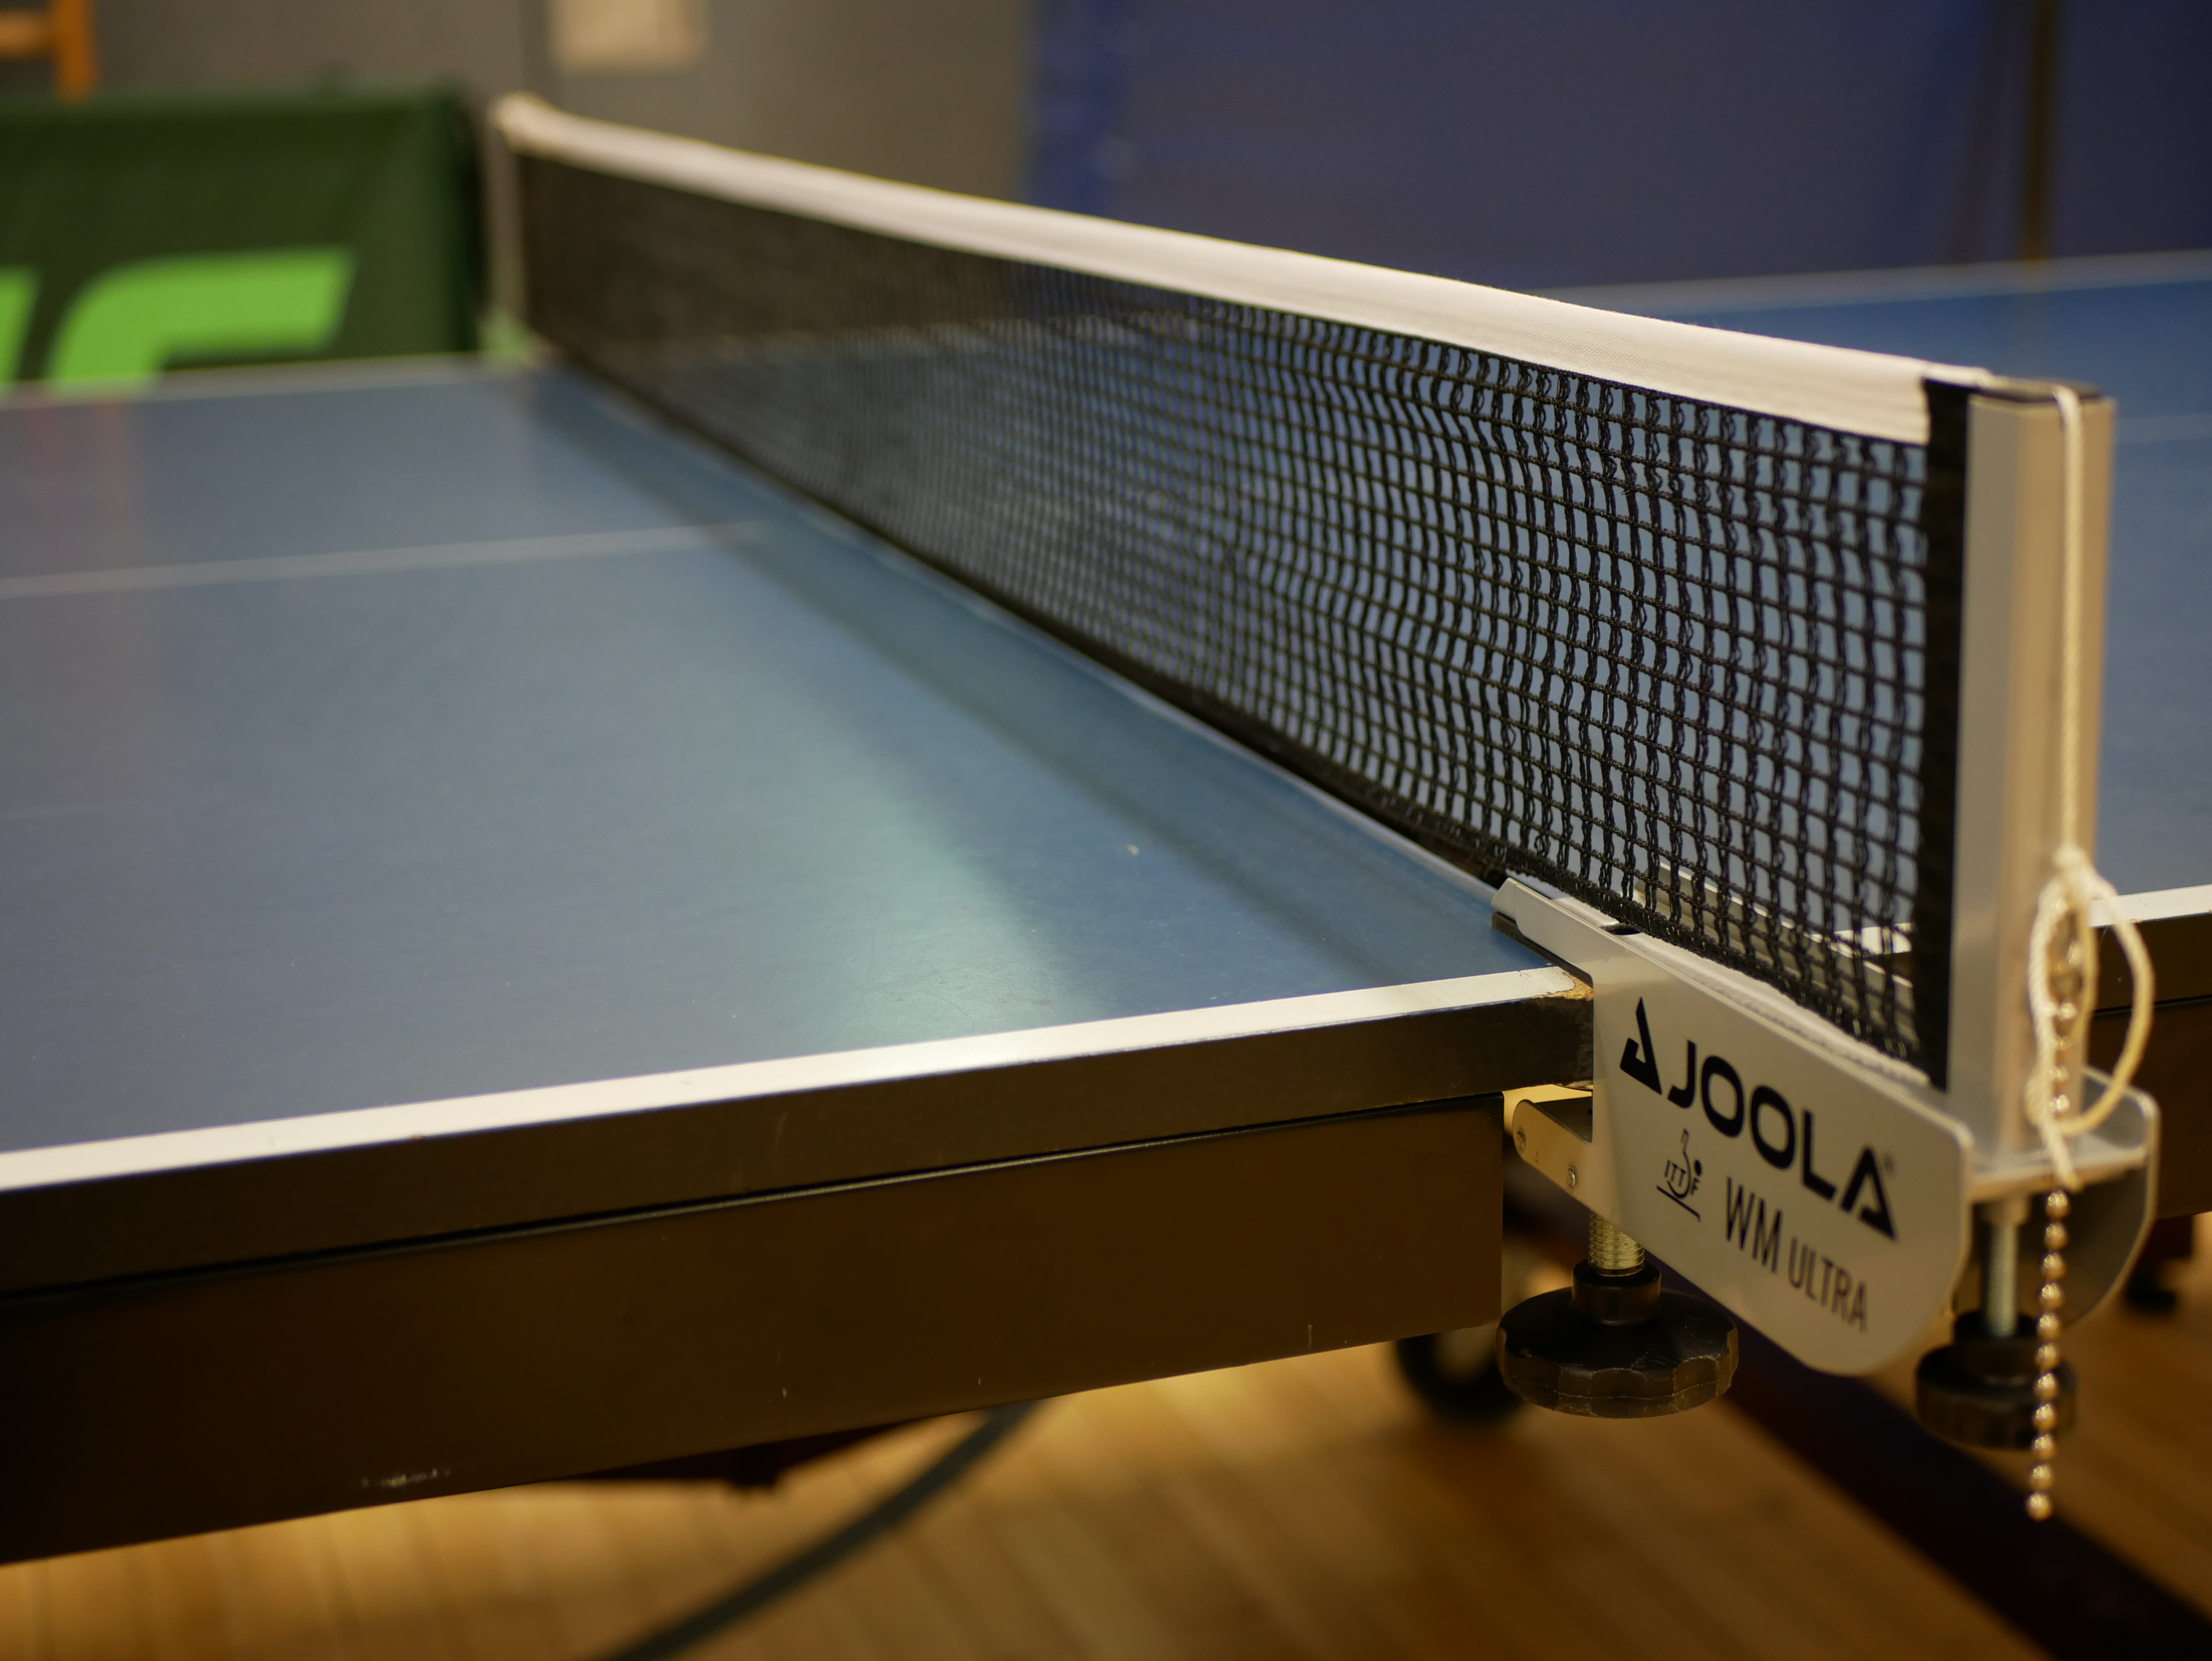 Bild von einem Tischtennis Netz